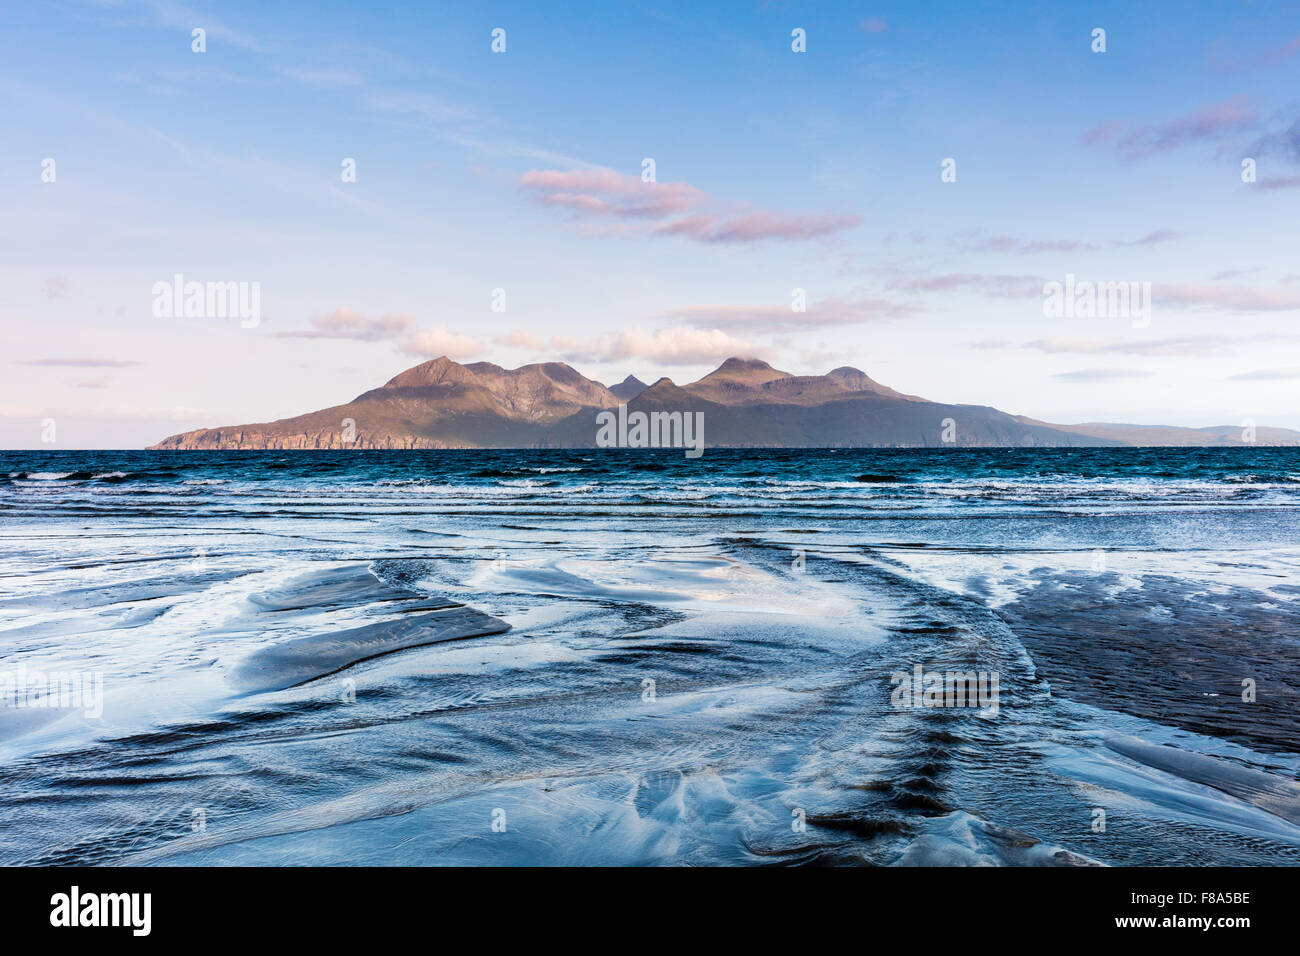 Mit Blick auf Rum Cullin Mountains, Laig Bay, Eigg, kleinen Inseln, Inneren Hebriden, Schottland. Stockfoto